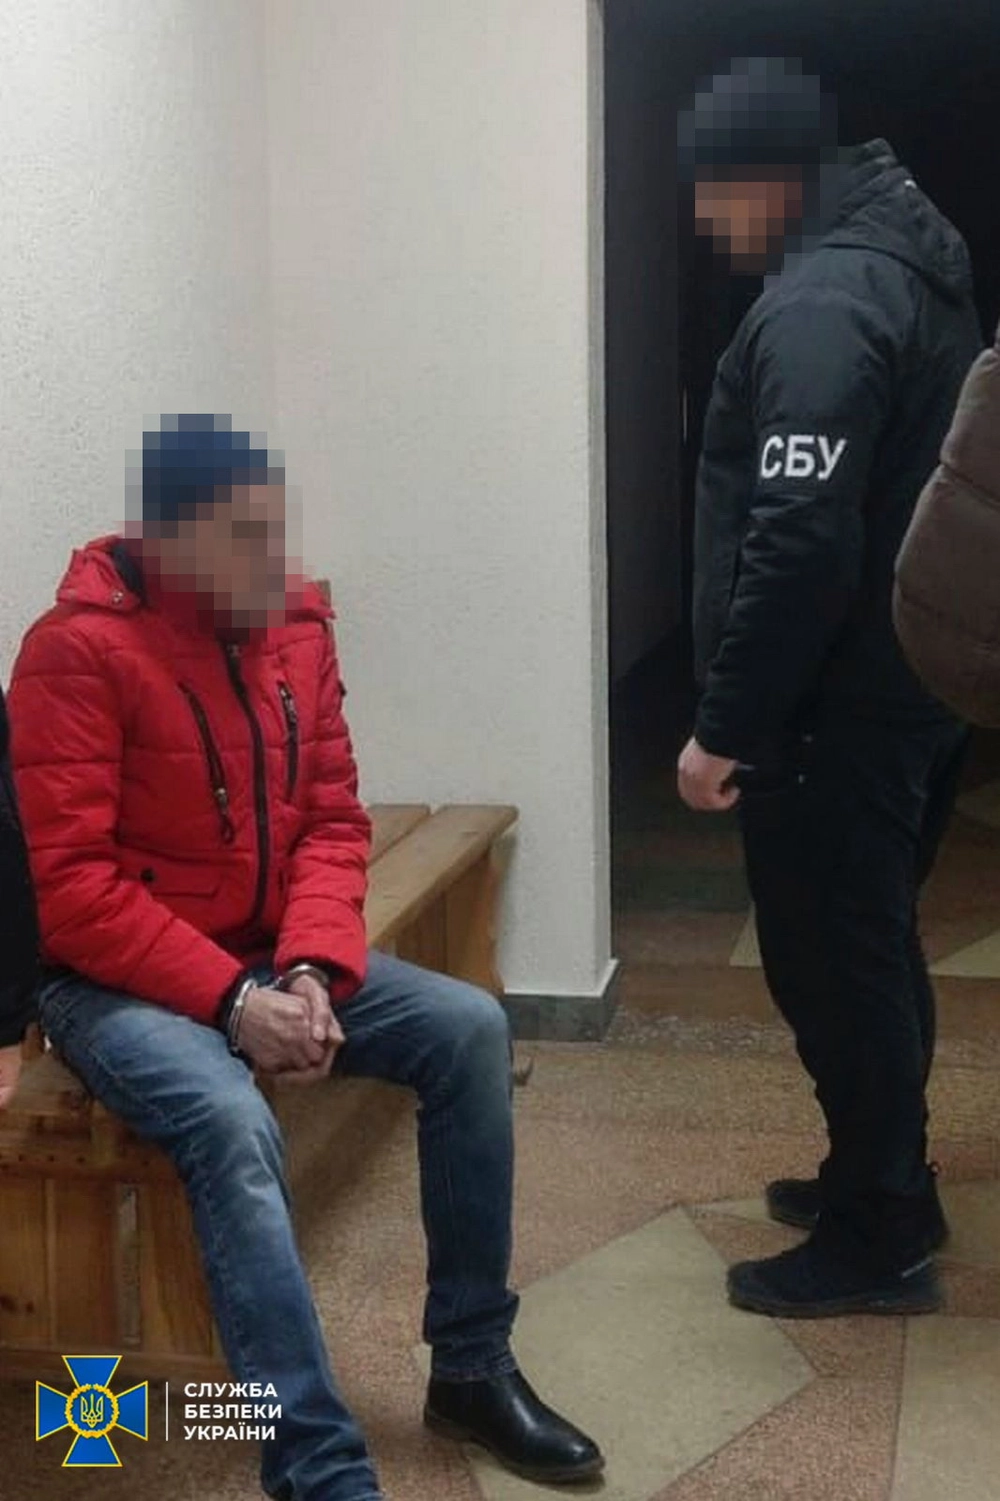 Хотел сбежать к оккупантам: правоохранители задержали коллаборанта, который следил за ВСУ во время оккупации Харьковщины